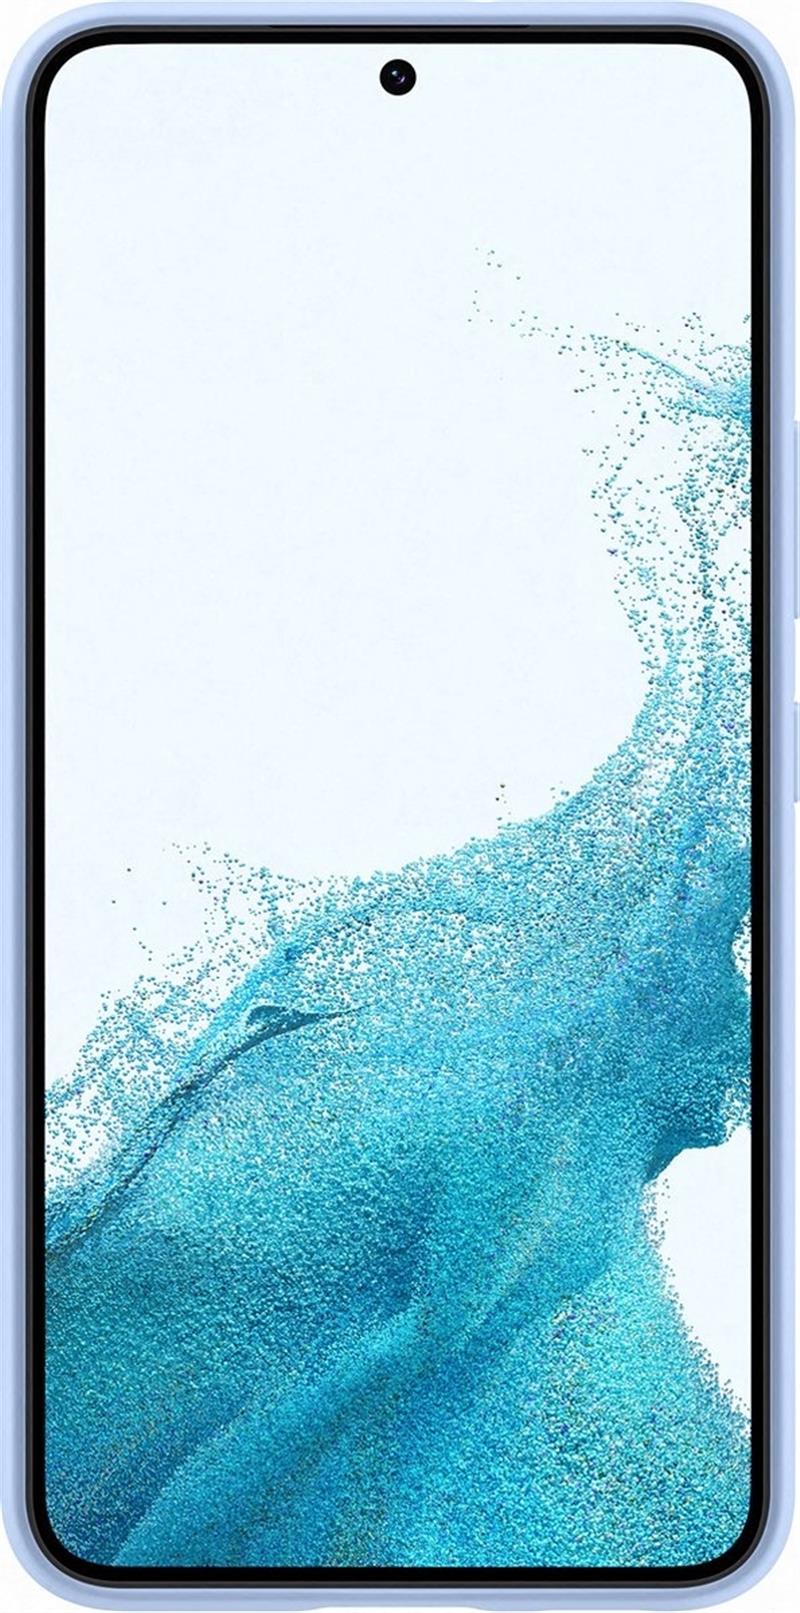 Samsung EF-PS901T mobiele telefoon behuizingen 15,5 cm (6.1"") Hoes Blauw